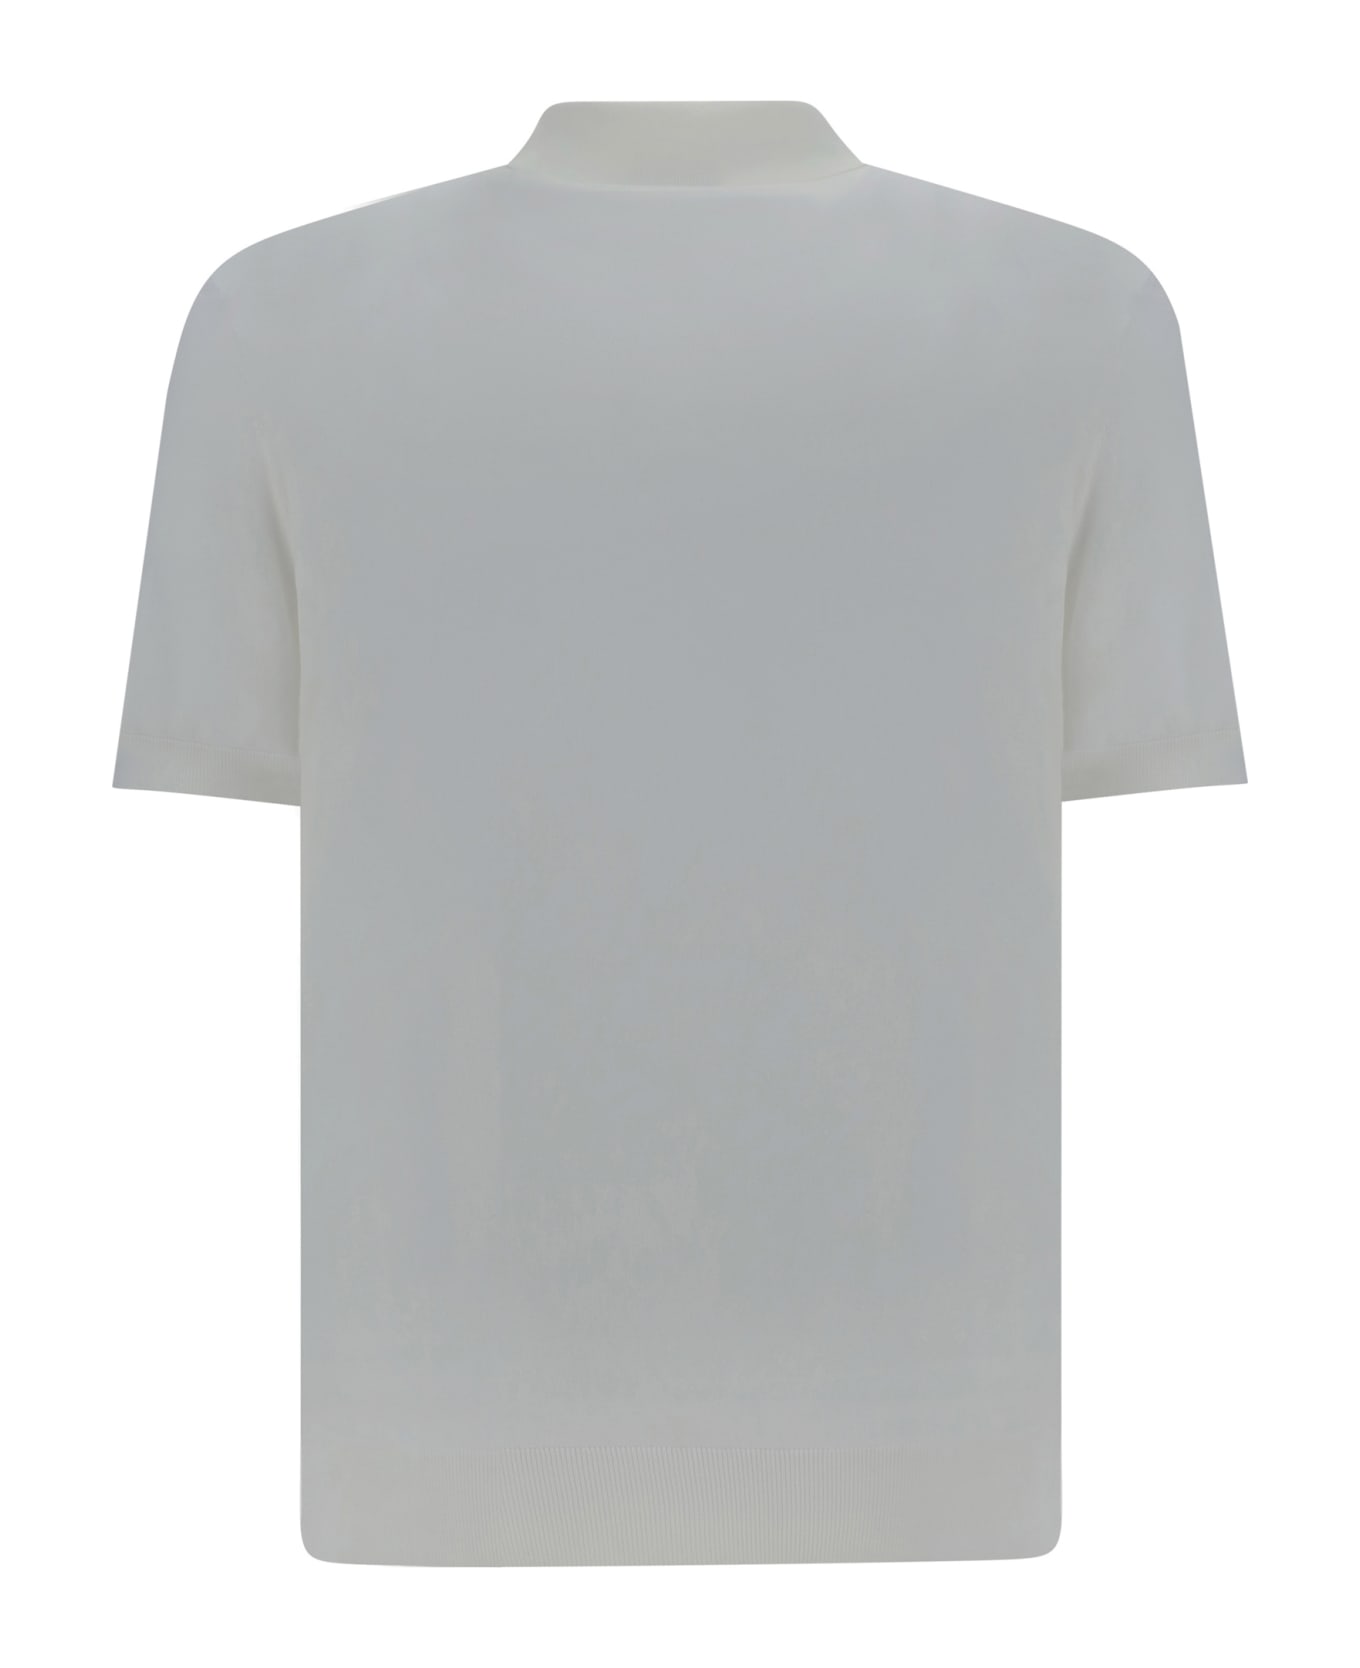 Zegna Polo Shirt - Bianco Naturale Unito